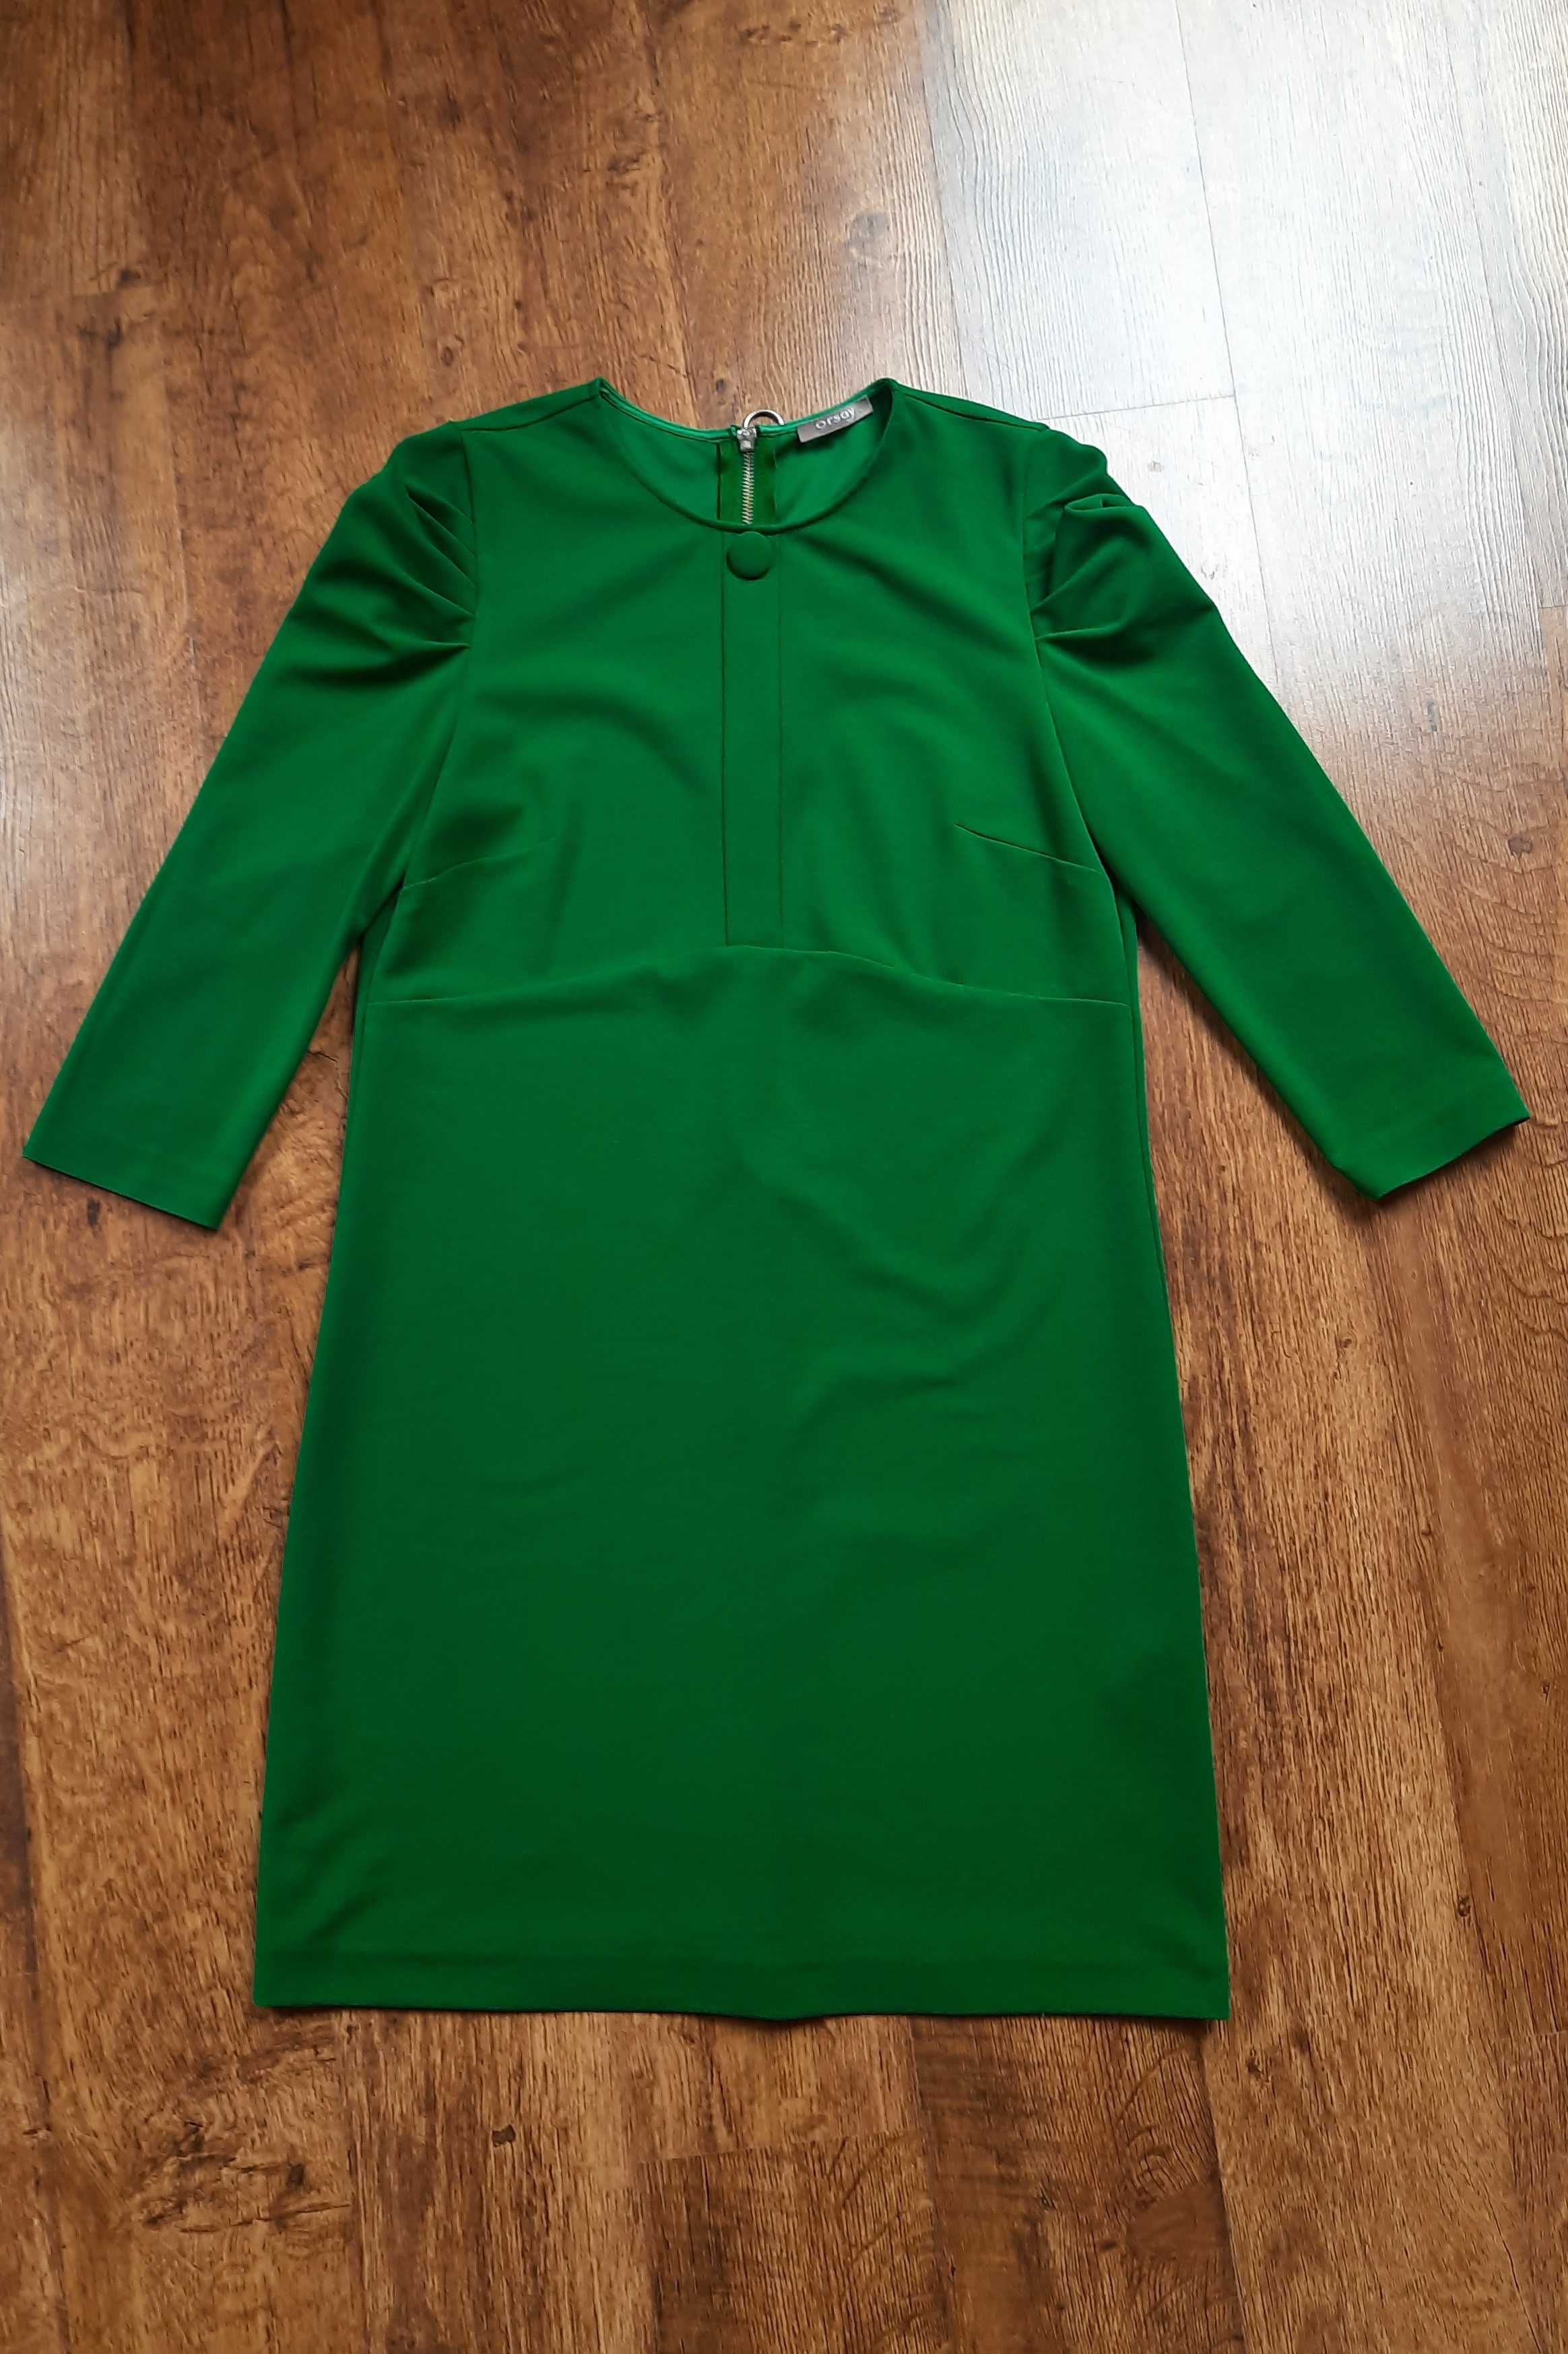 sukienka w soczyście zielonym kolorze, idealna na wiosnę, rozmiar M